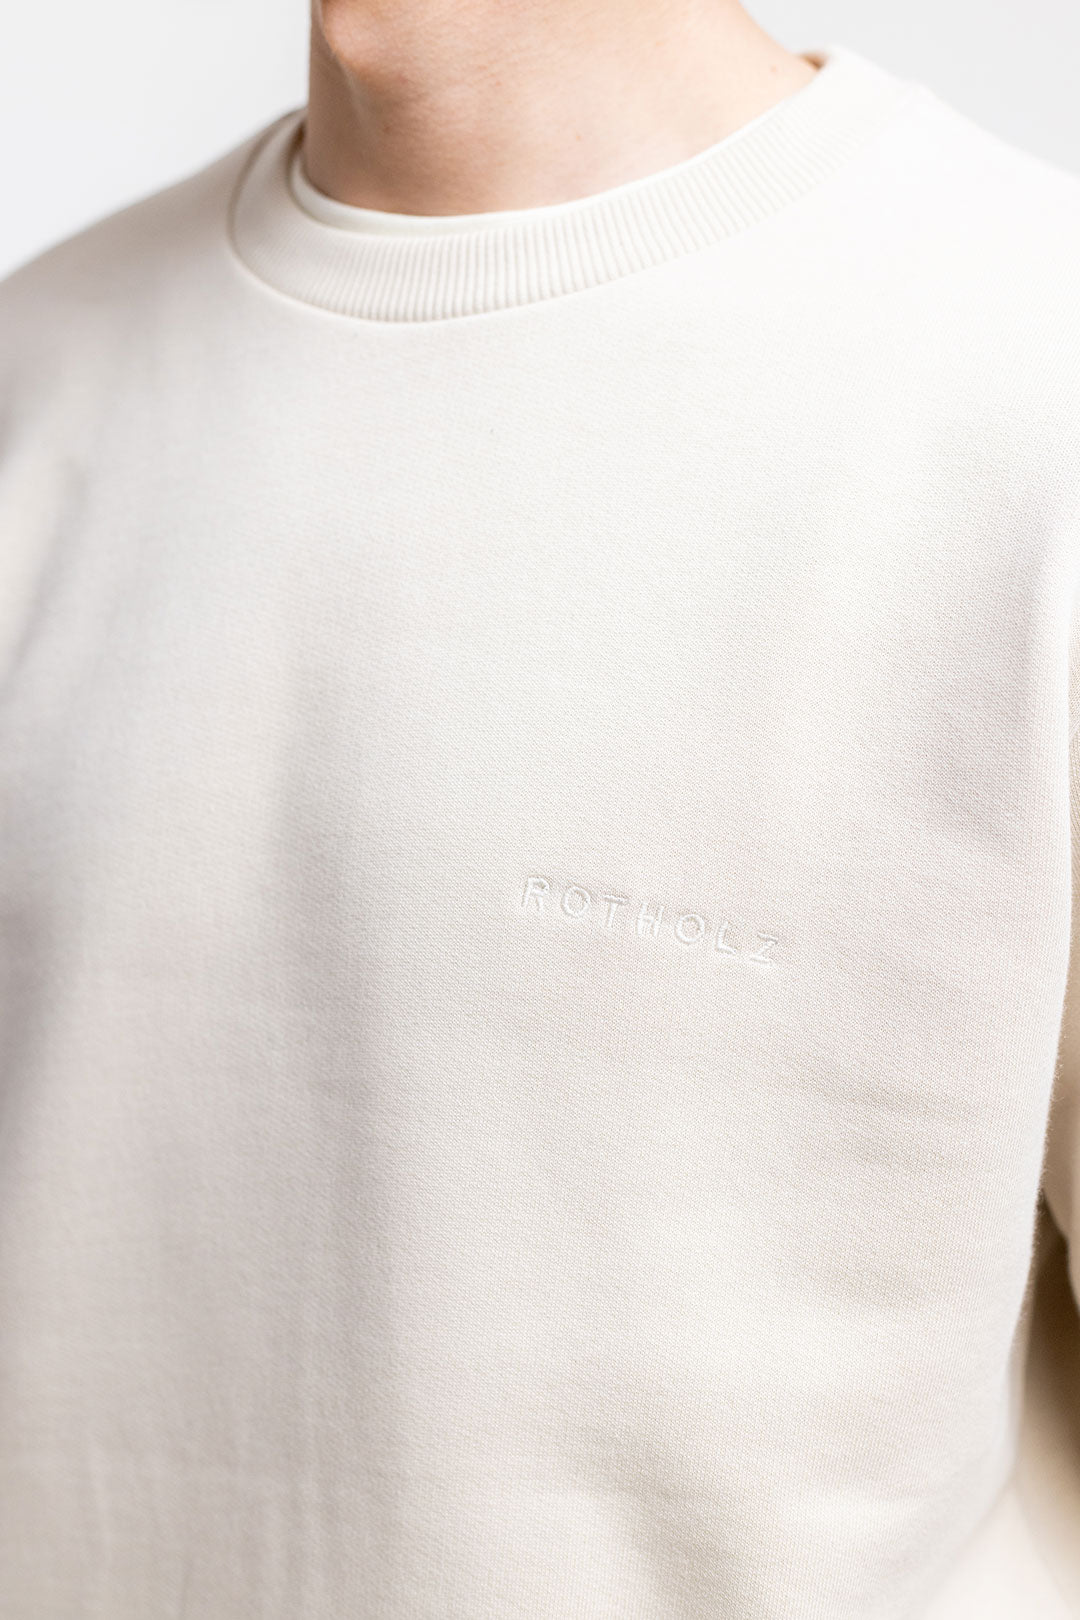 Logo sweat-shirt beige en coton 100% biologique de Rotholz